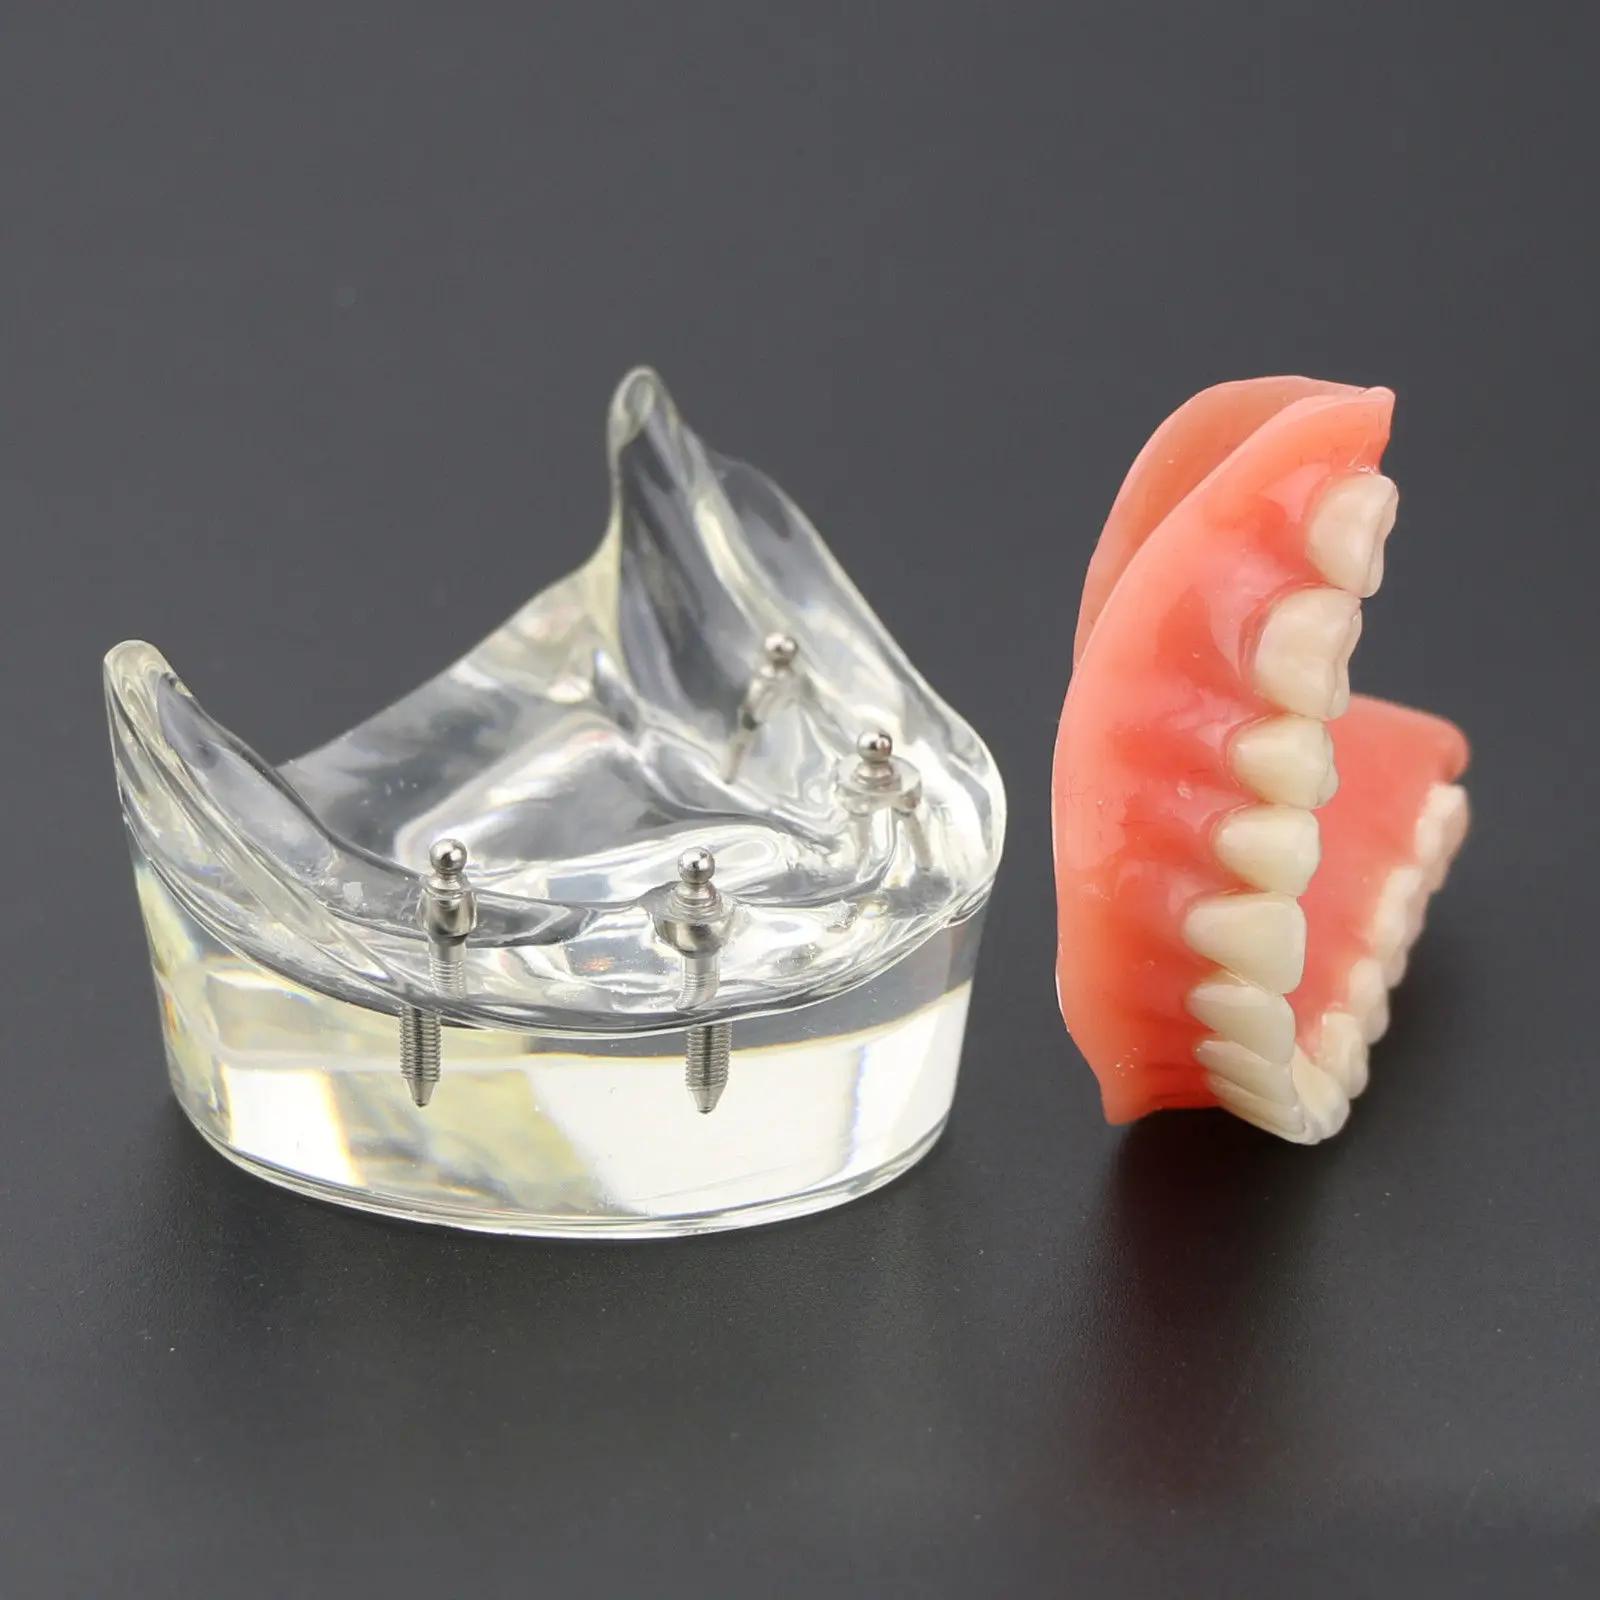 Зубные протезы, модель зубов, съемные внутренние нижние челюсти, модель нижних зубов с имплантатом для обучения зубов